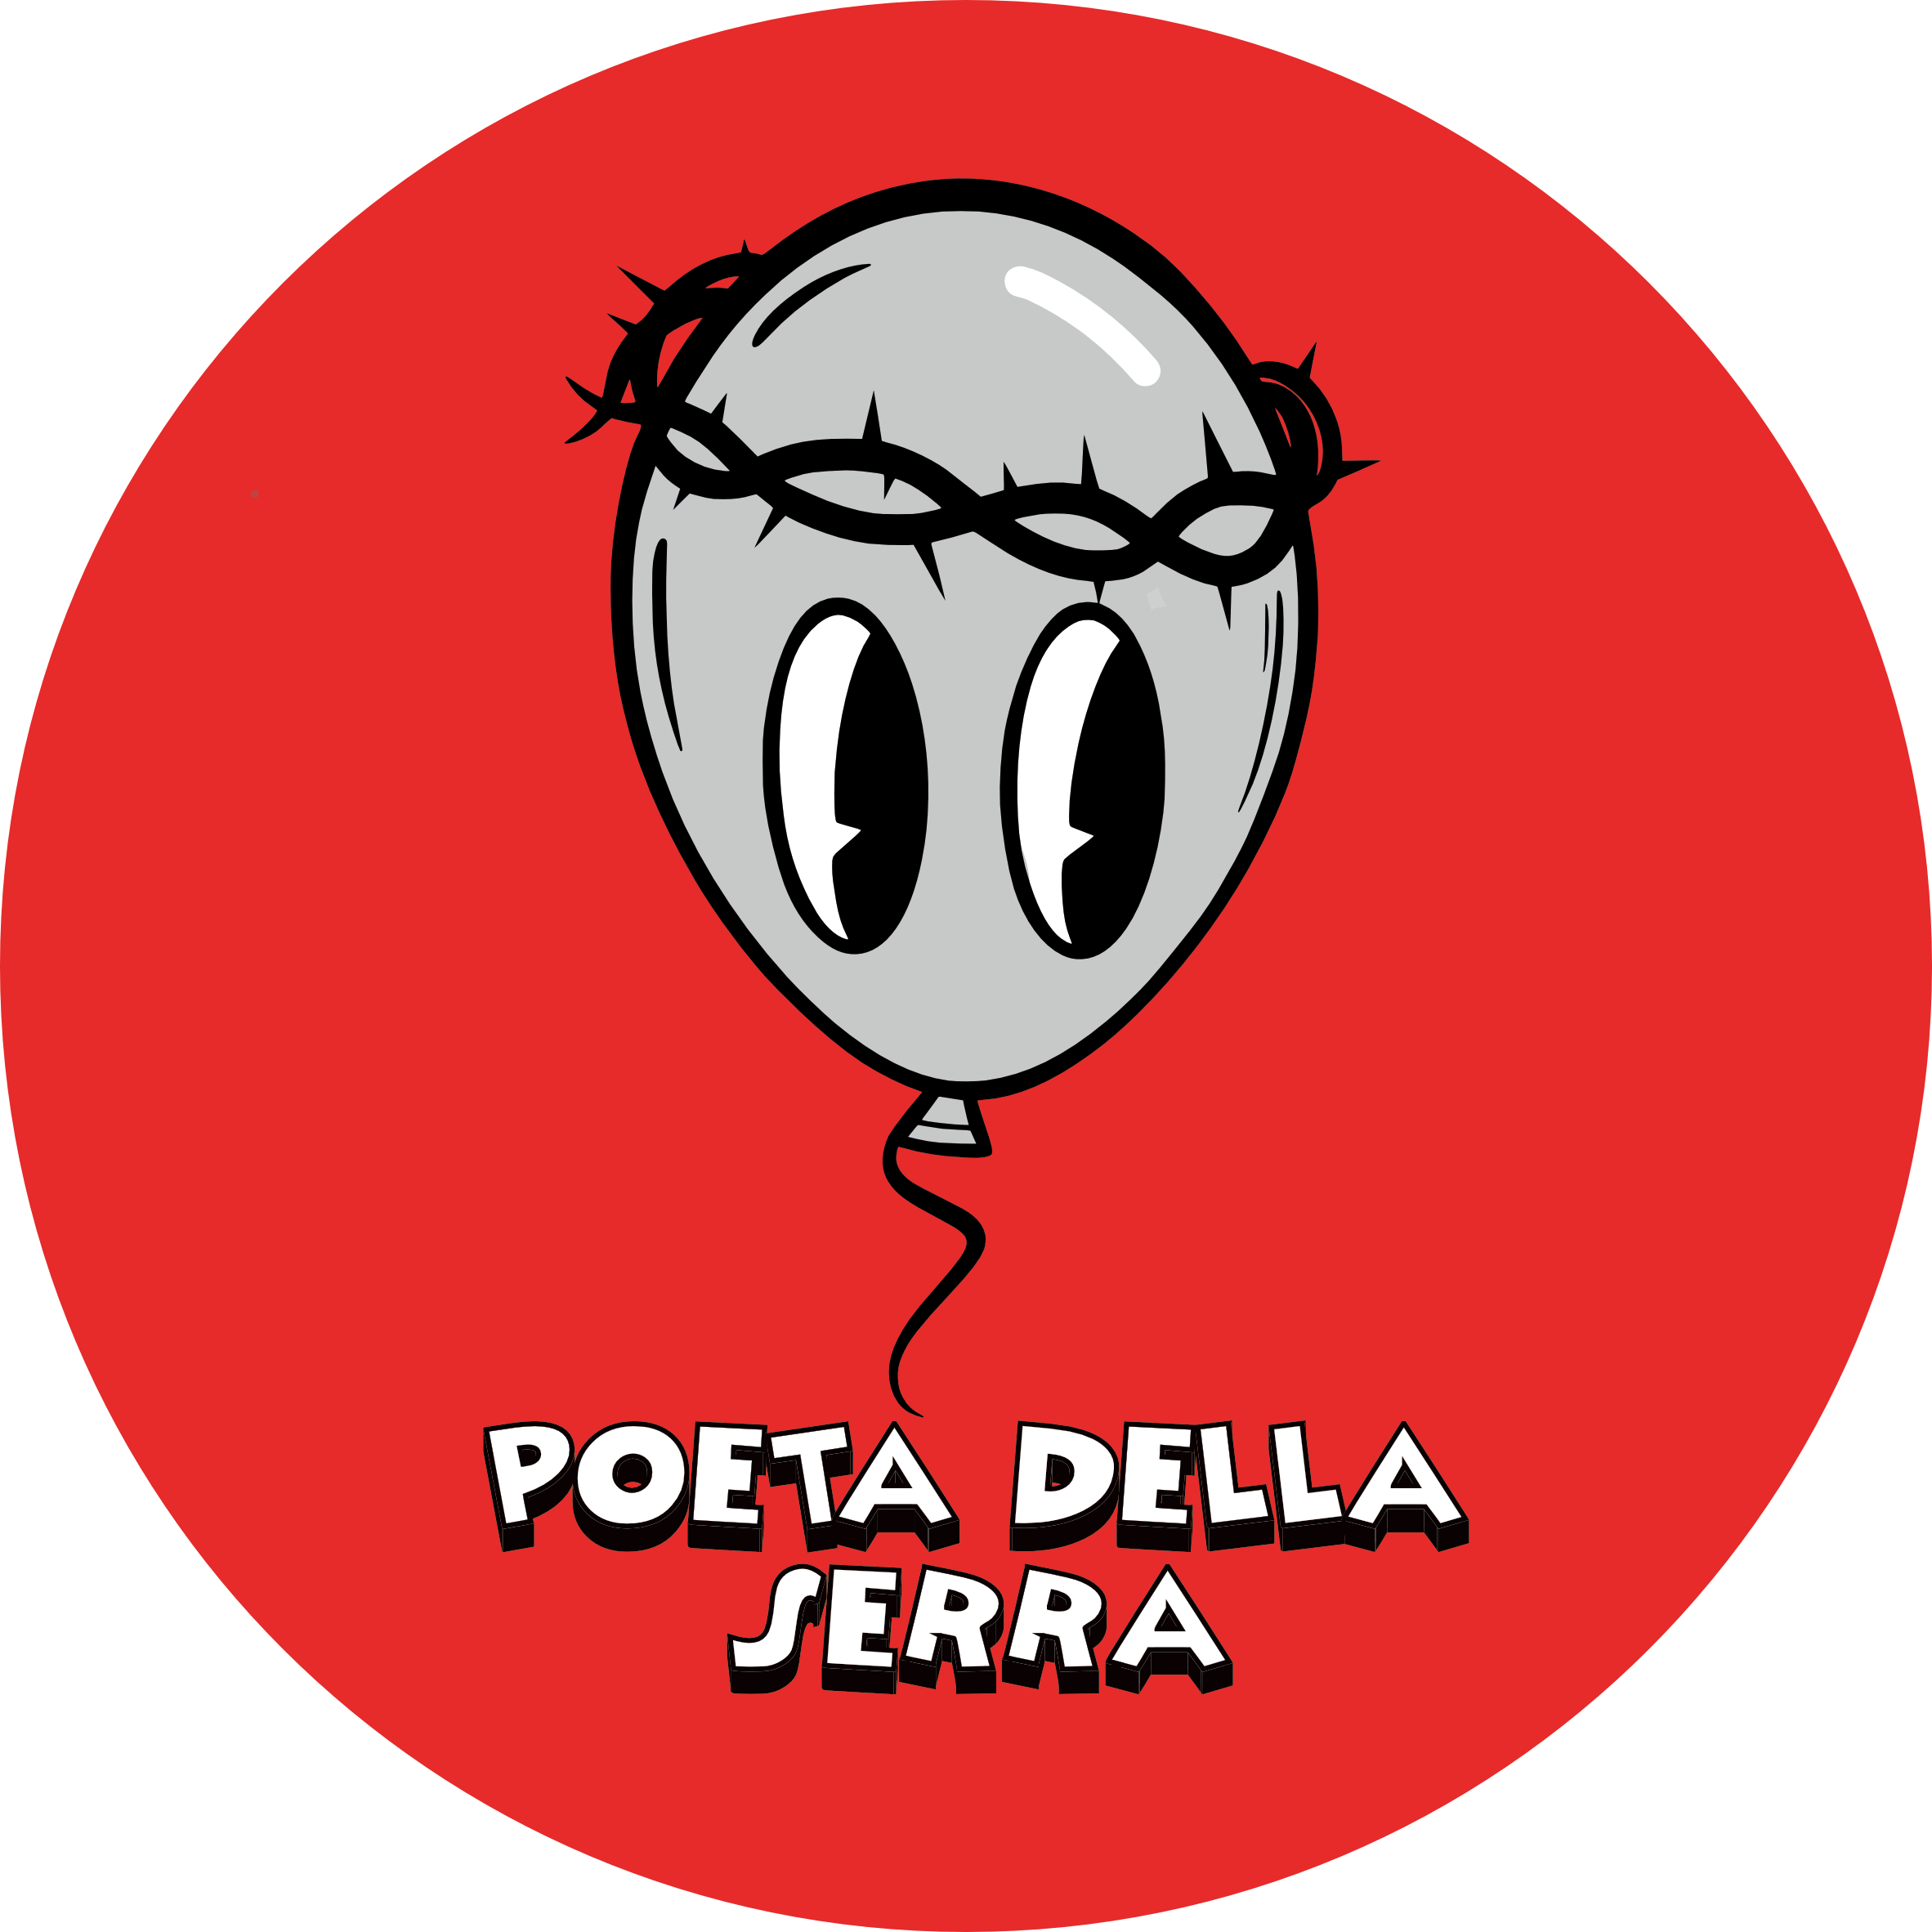 Poeta Della Serra